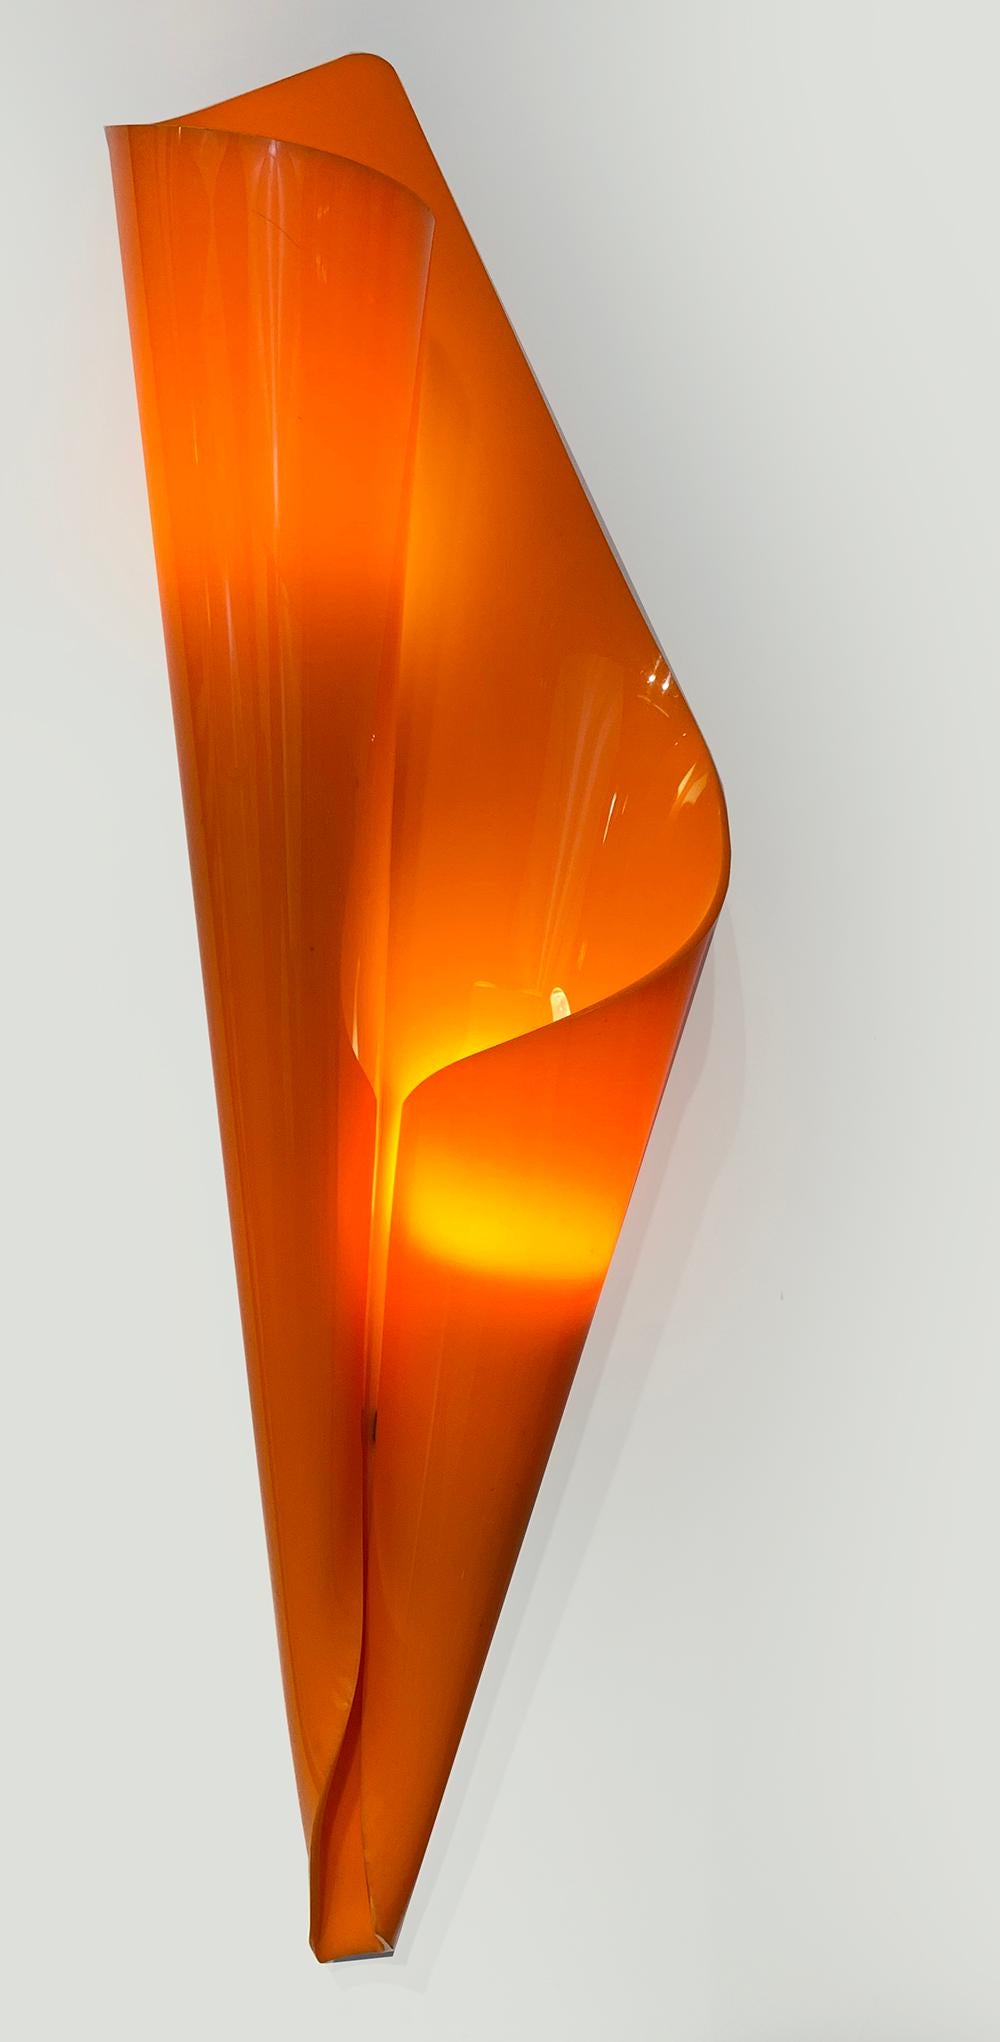 Extrem seltene, skulpturale Mid-Century Modern Lucite Paar Wandleuchter in orange und gelb gefärbt. 
Entworfen von Hanns Hoffmann-Lederer in den 1950er Jahren für Heinz Hecht, Darmstadt, Deutschland.
 